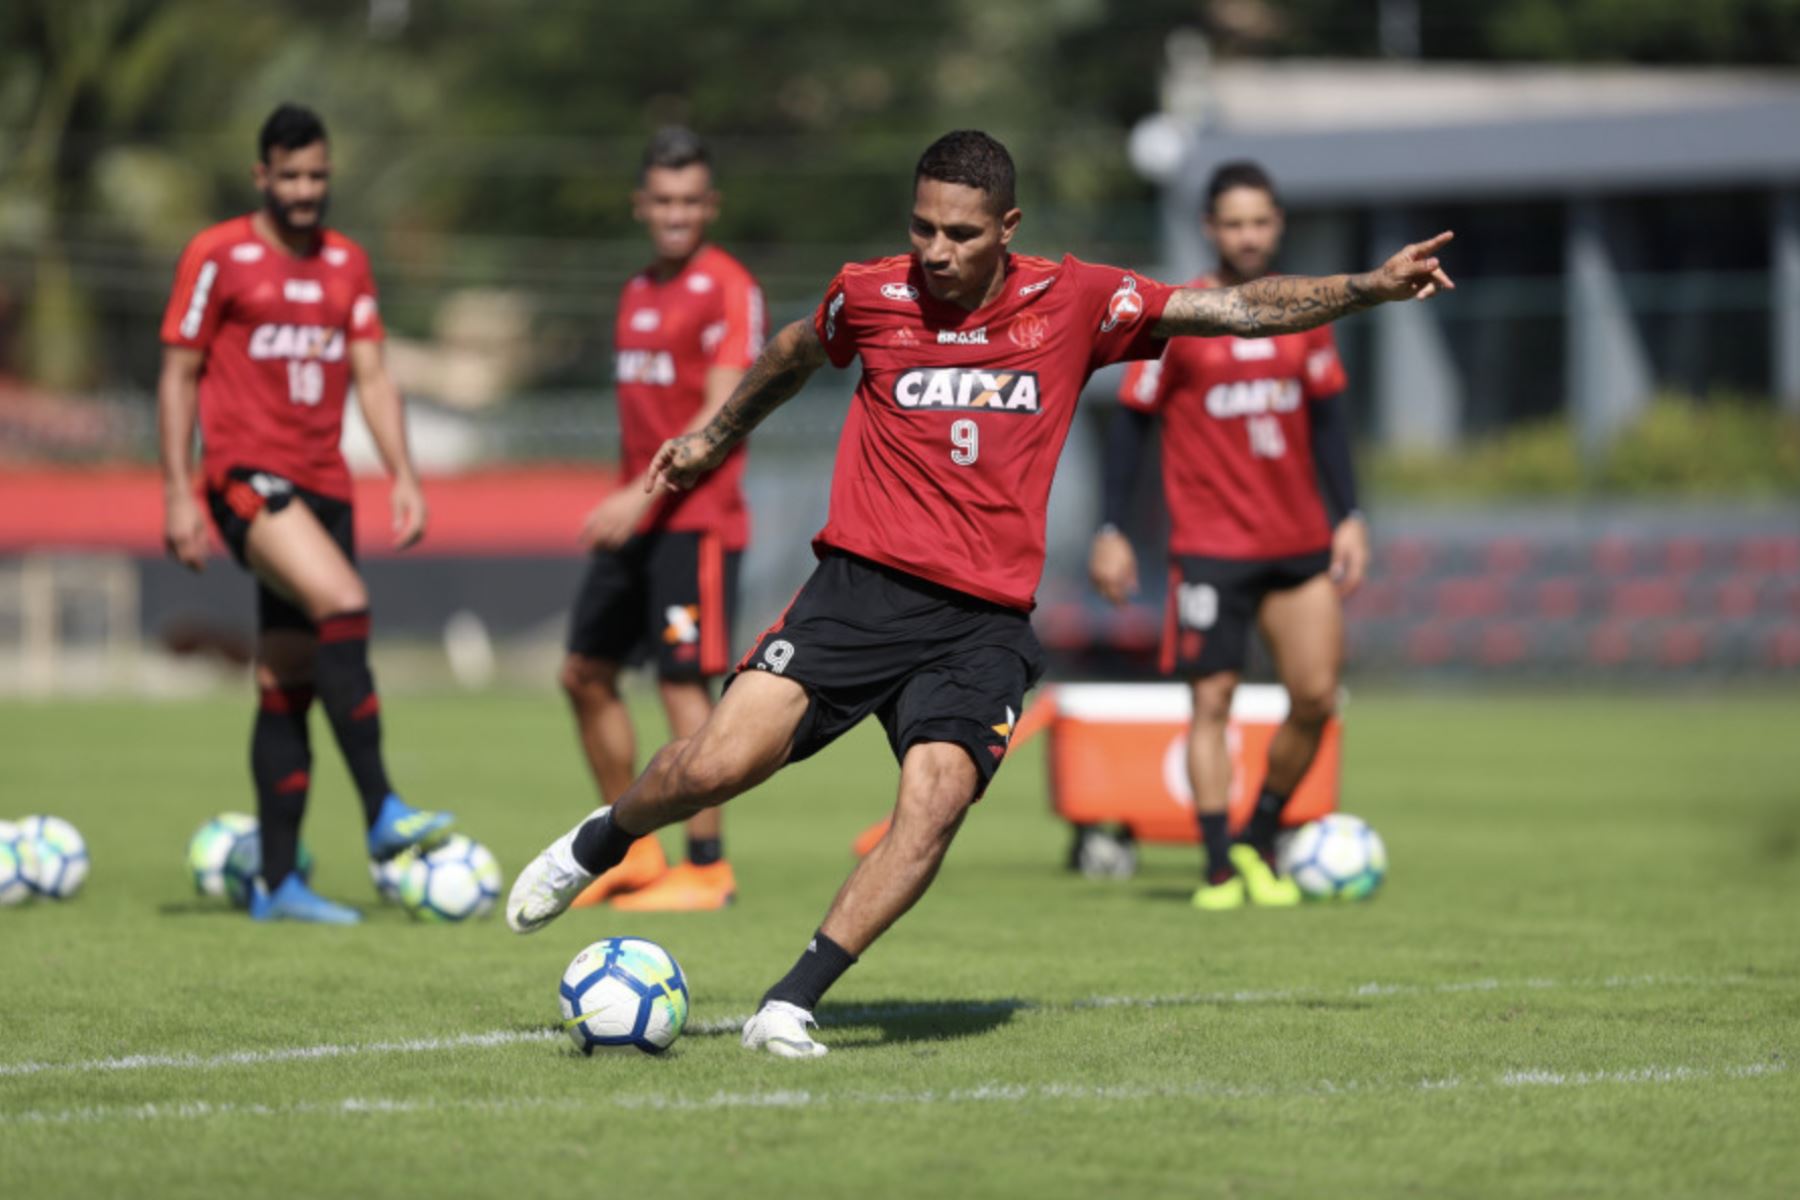 El delantero peruano Paolo Guerrero puede jugar para su club brasileño Flamengo, indicó el Tribunal Federal de Suiza al considerar que "el efecto suspensivo" del recurso interpuesto por el jugador contra su suspensión por un caso de dopaje aún es "válido".Foto: Flamengo